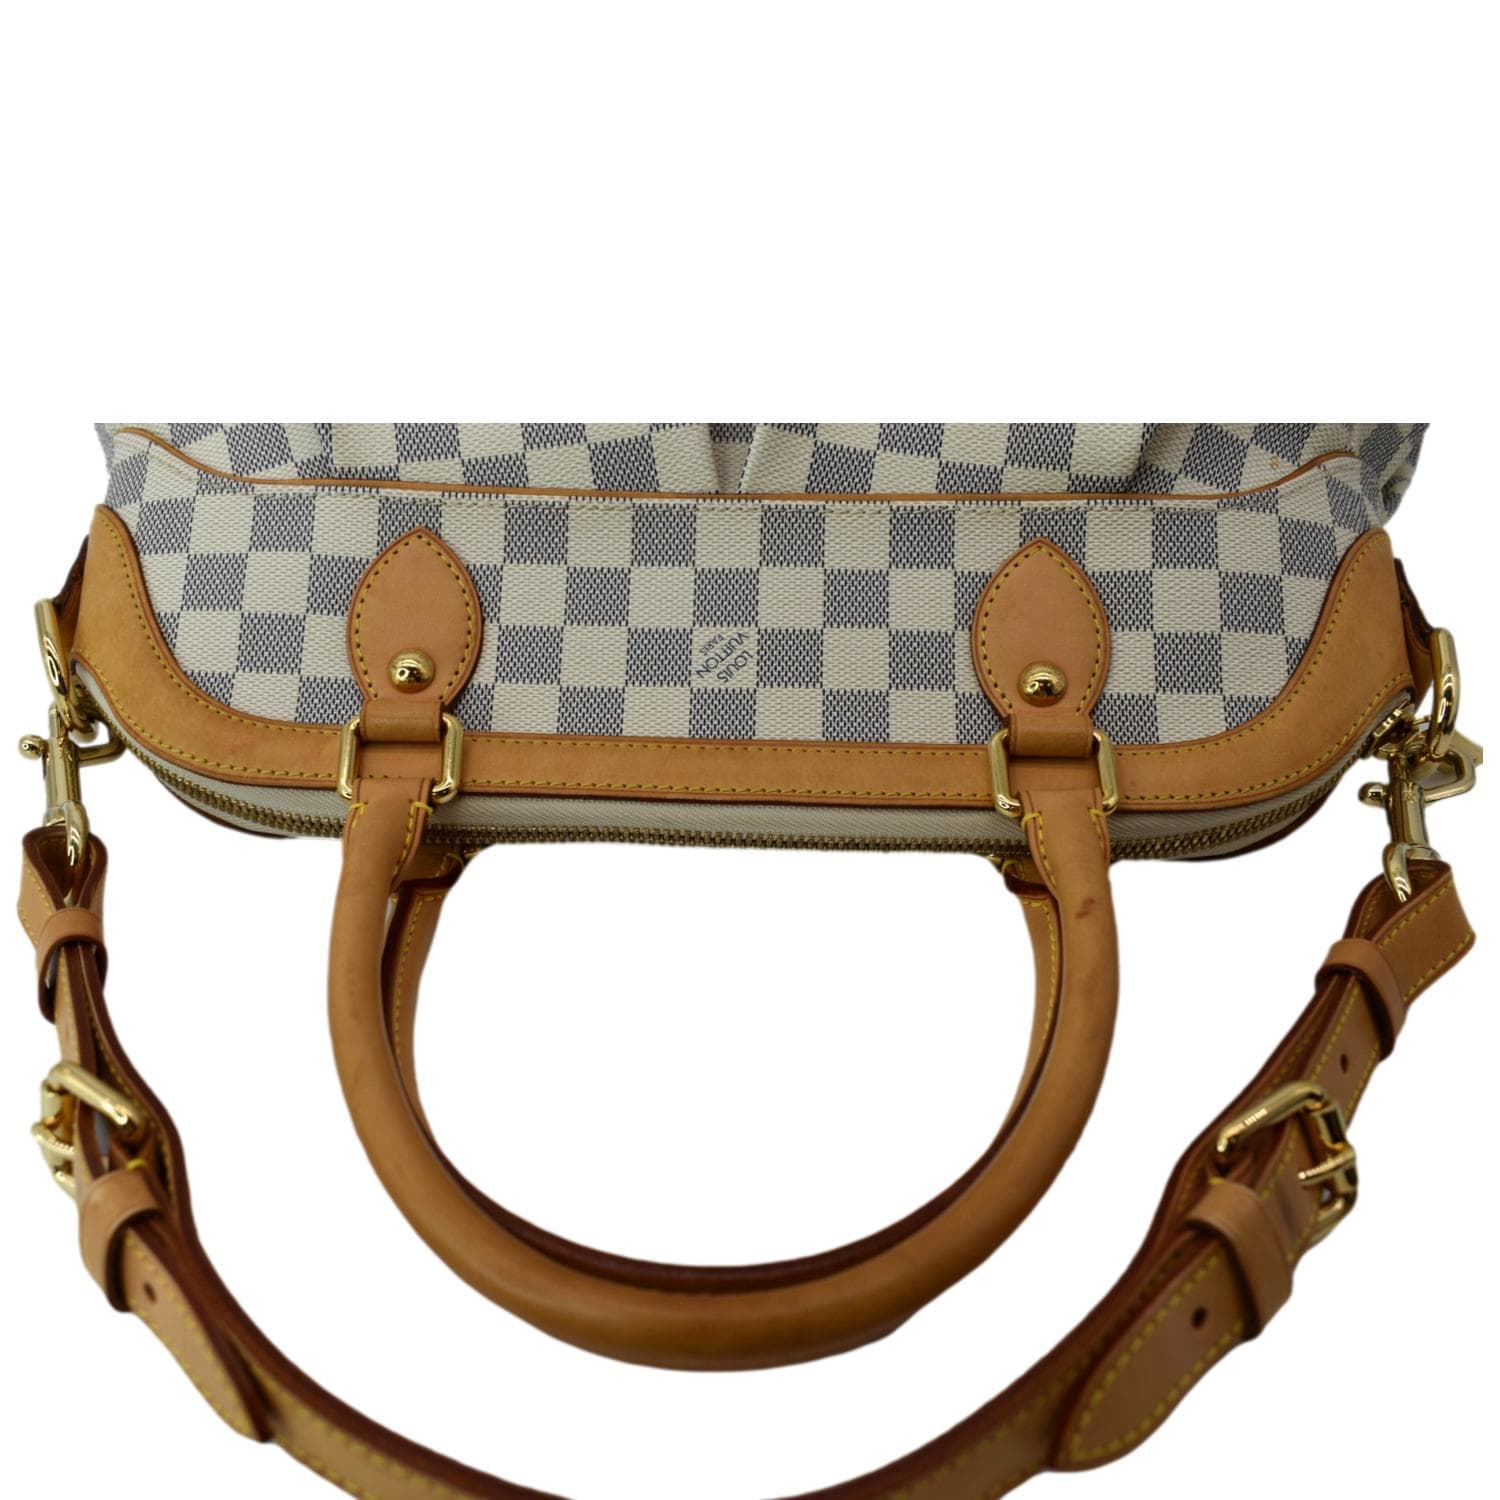 Authentic LOUIS VUITTON Trevi GM Shoulder Bag Handbag Damier Canvas N51998